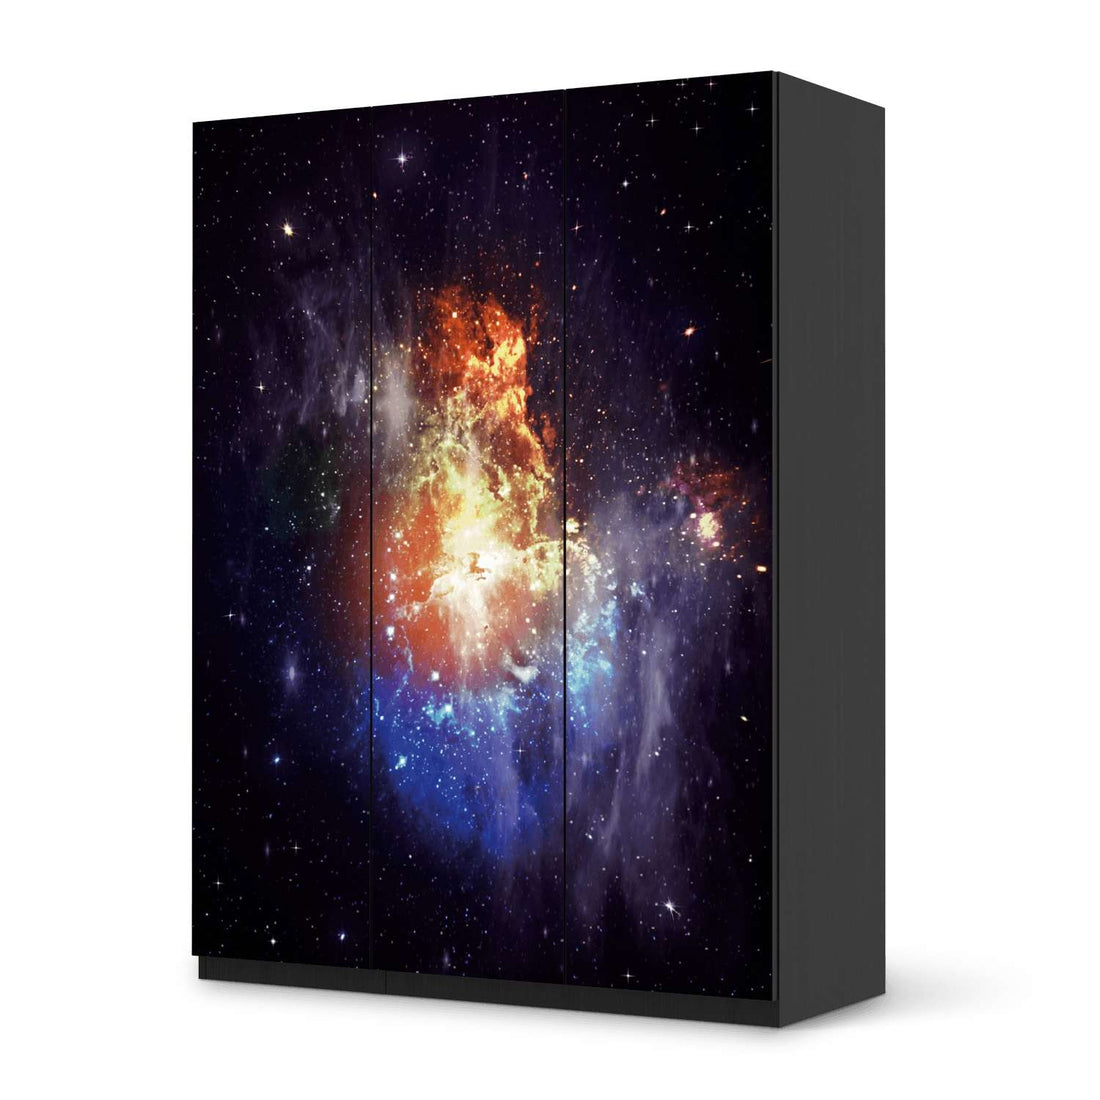 Folie für Möbel Nebula - IKEA Pax Schrank 201 cm Höhe - 3 Türen - schwarz